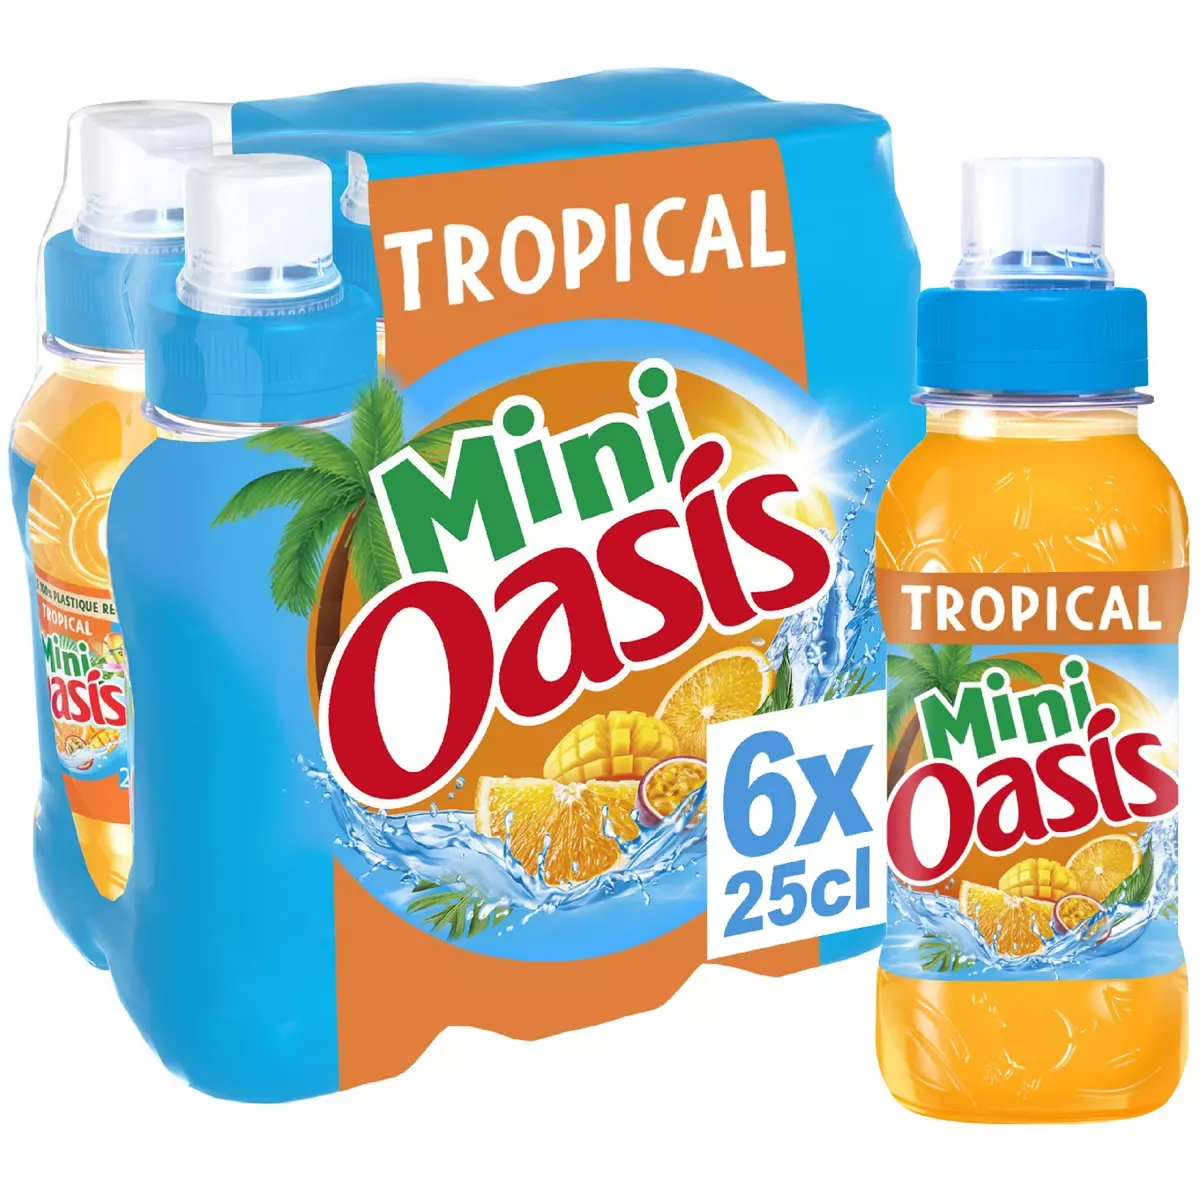 Boisson aux fruits Tropical OASIS : le pack de 4 bouteilles de 2L